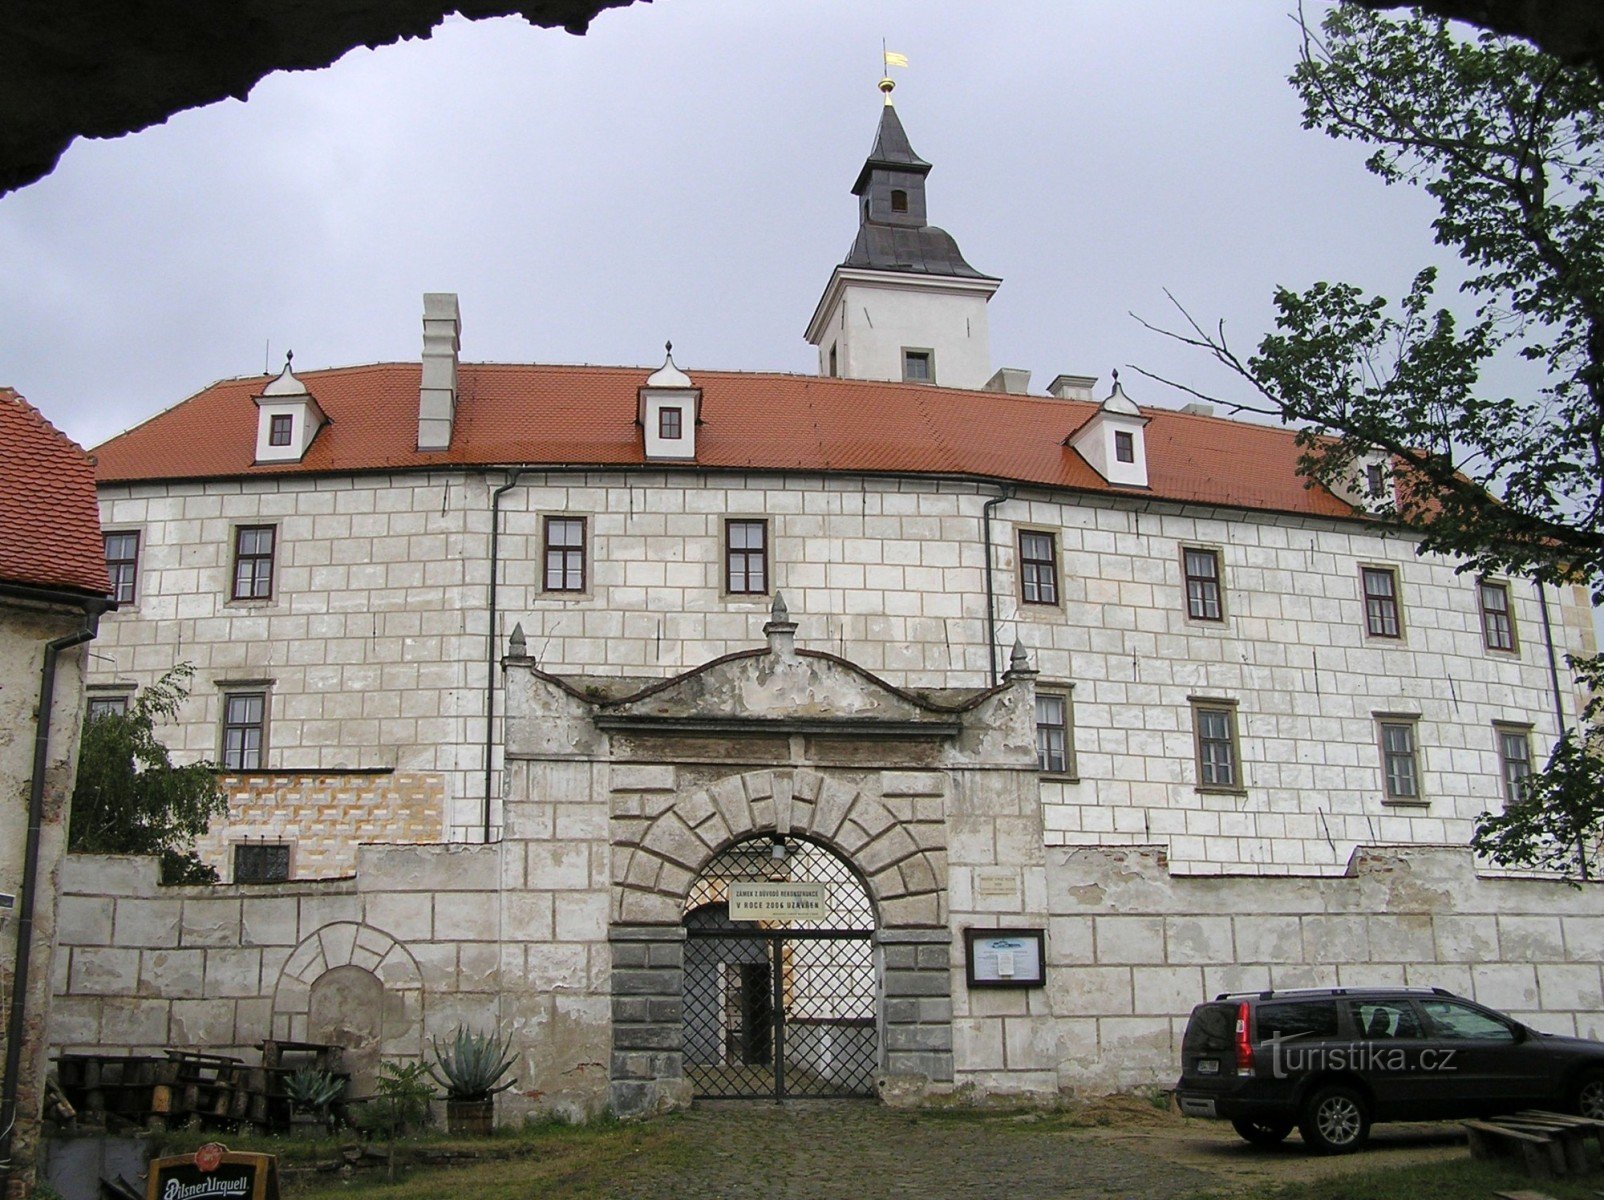 Jevišoice - Stary Zamek (druga brama)